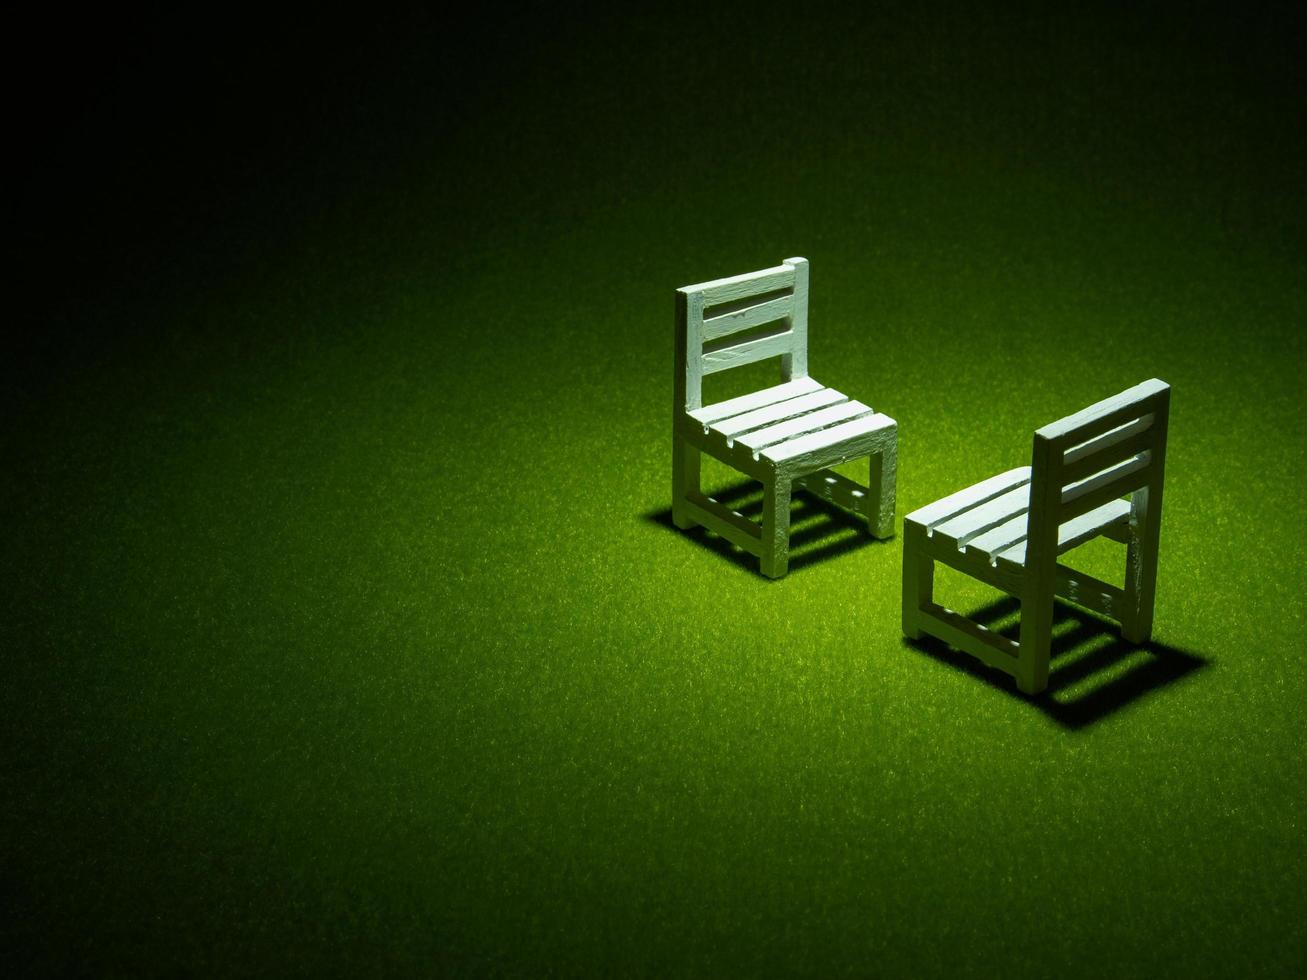 cadeiras de madeira brancas na grama artificial. luz brilhando de cima no tom escuro baixa chave foto